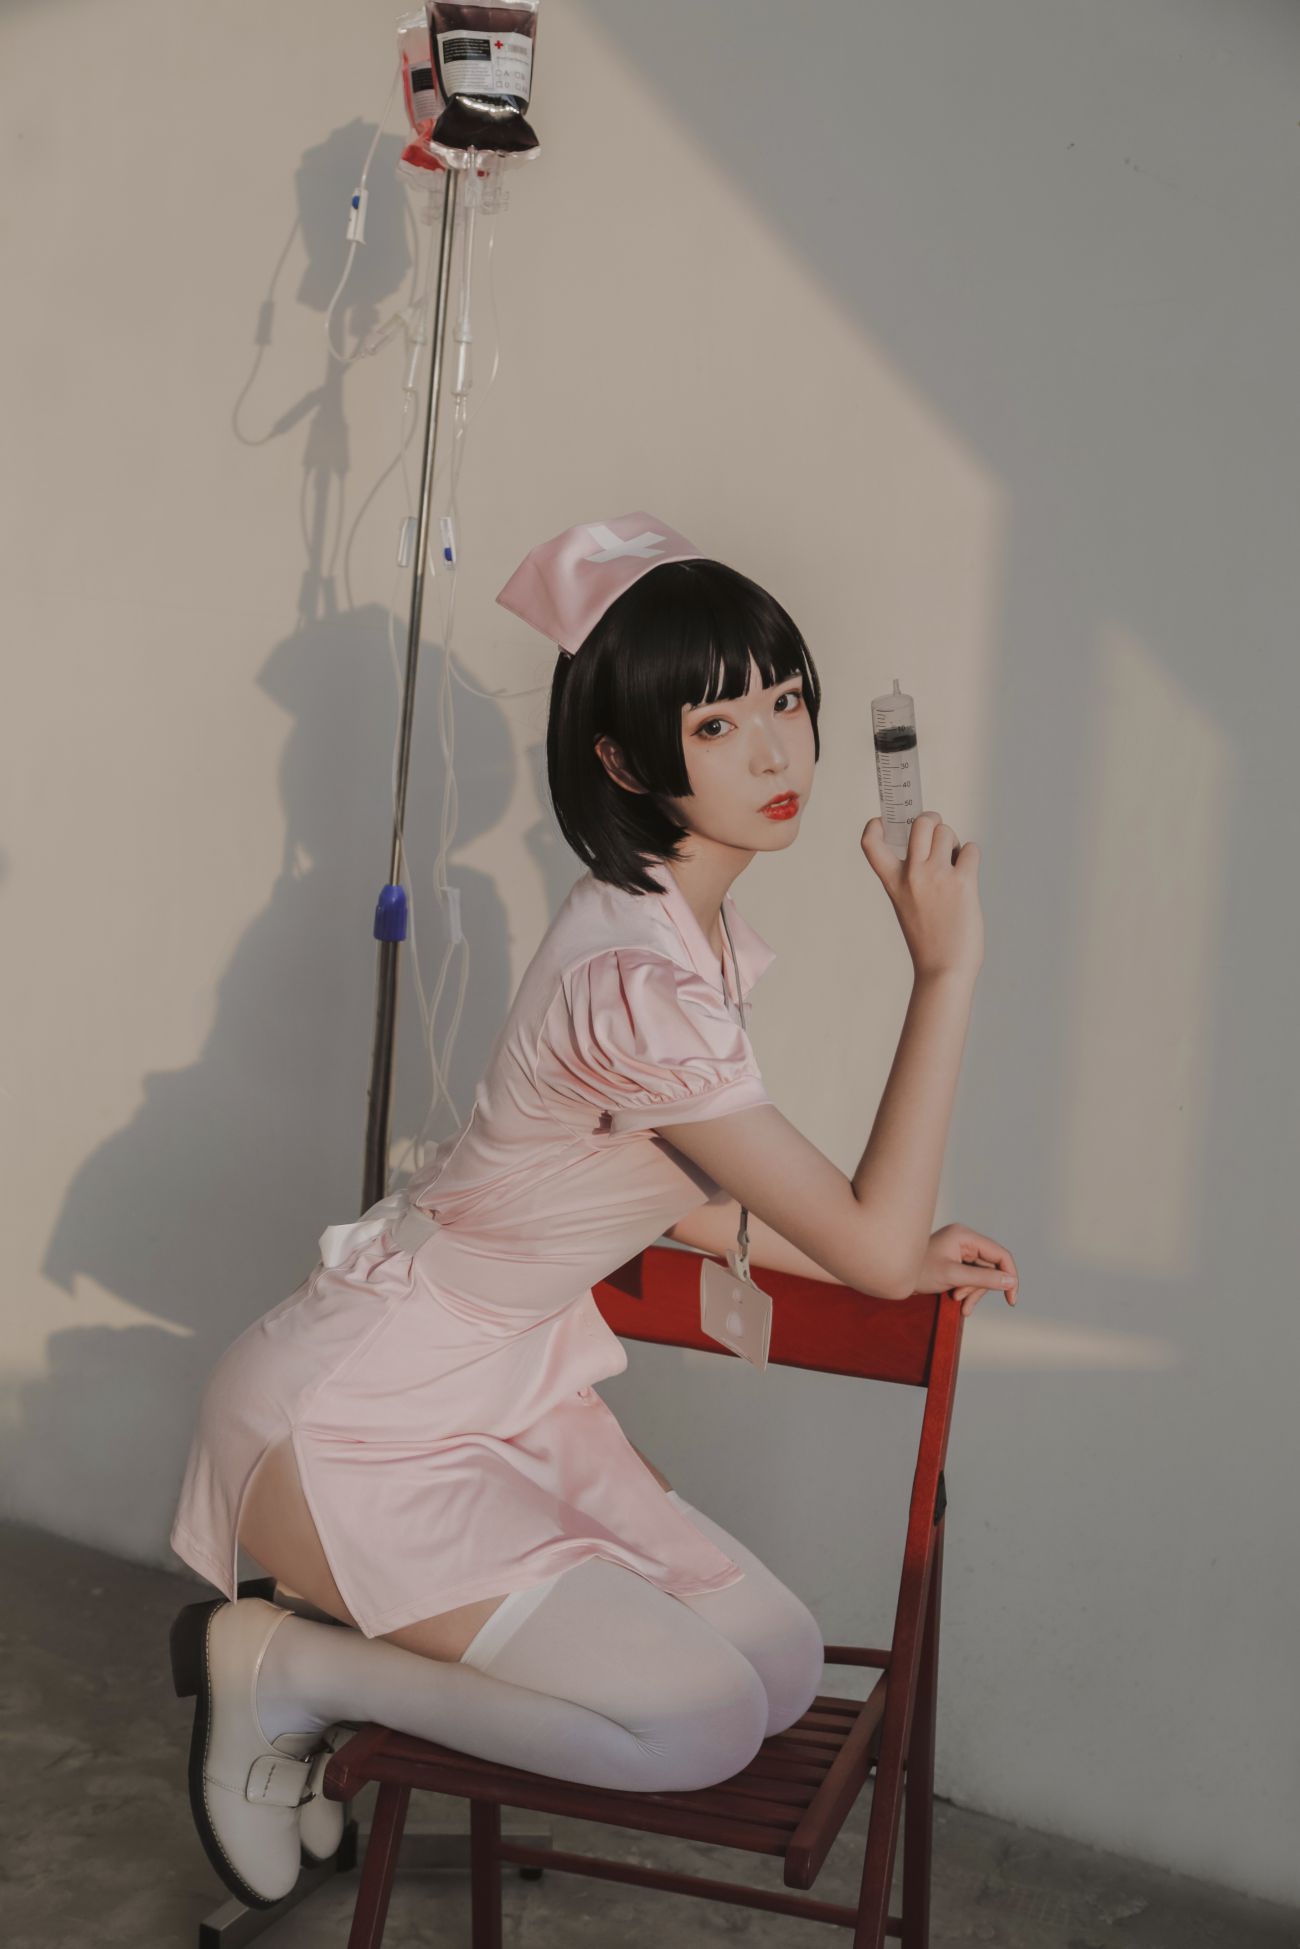 微博美少女Fushii海堂Cosplay性感写真护士 (11)